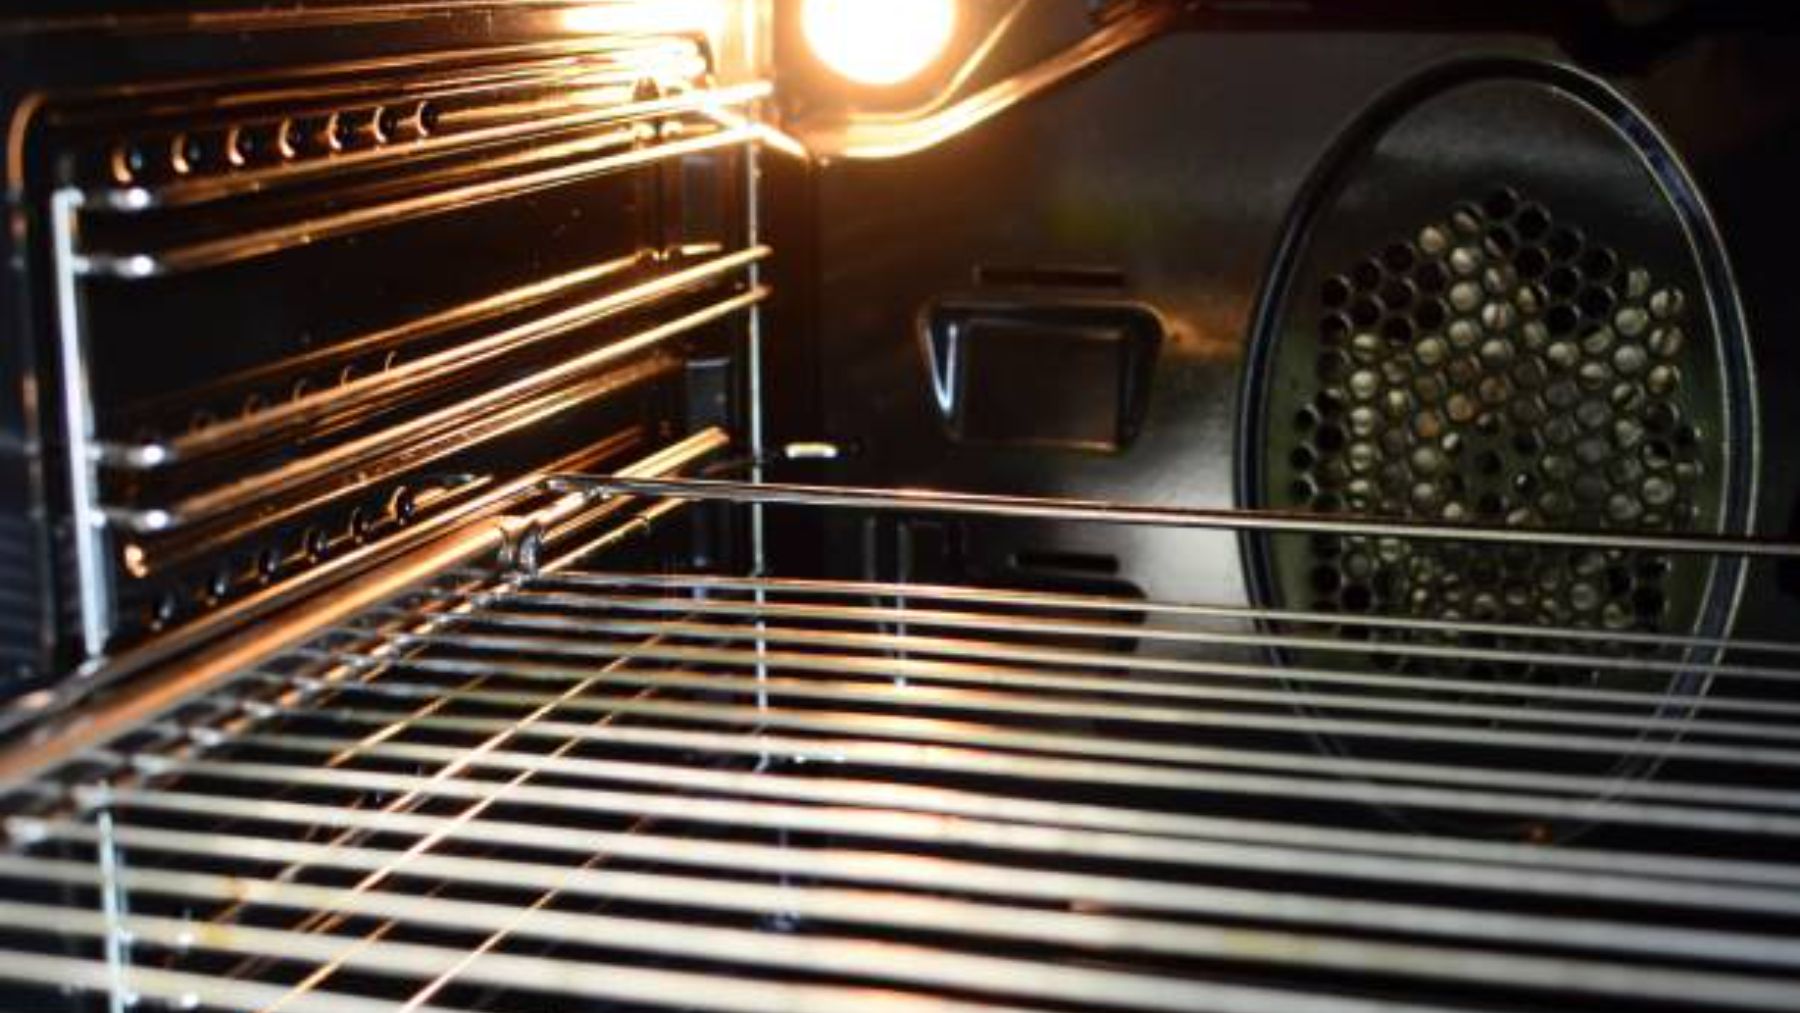 Limpia las rejillas del horno de forma eficaz